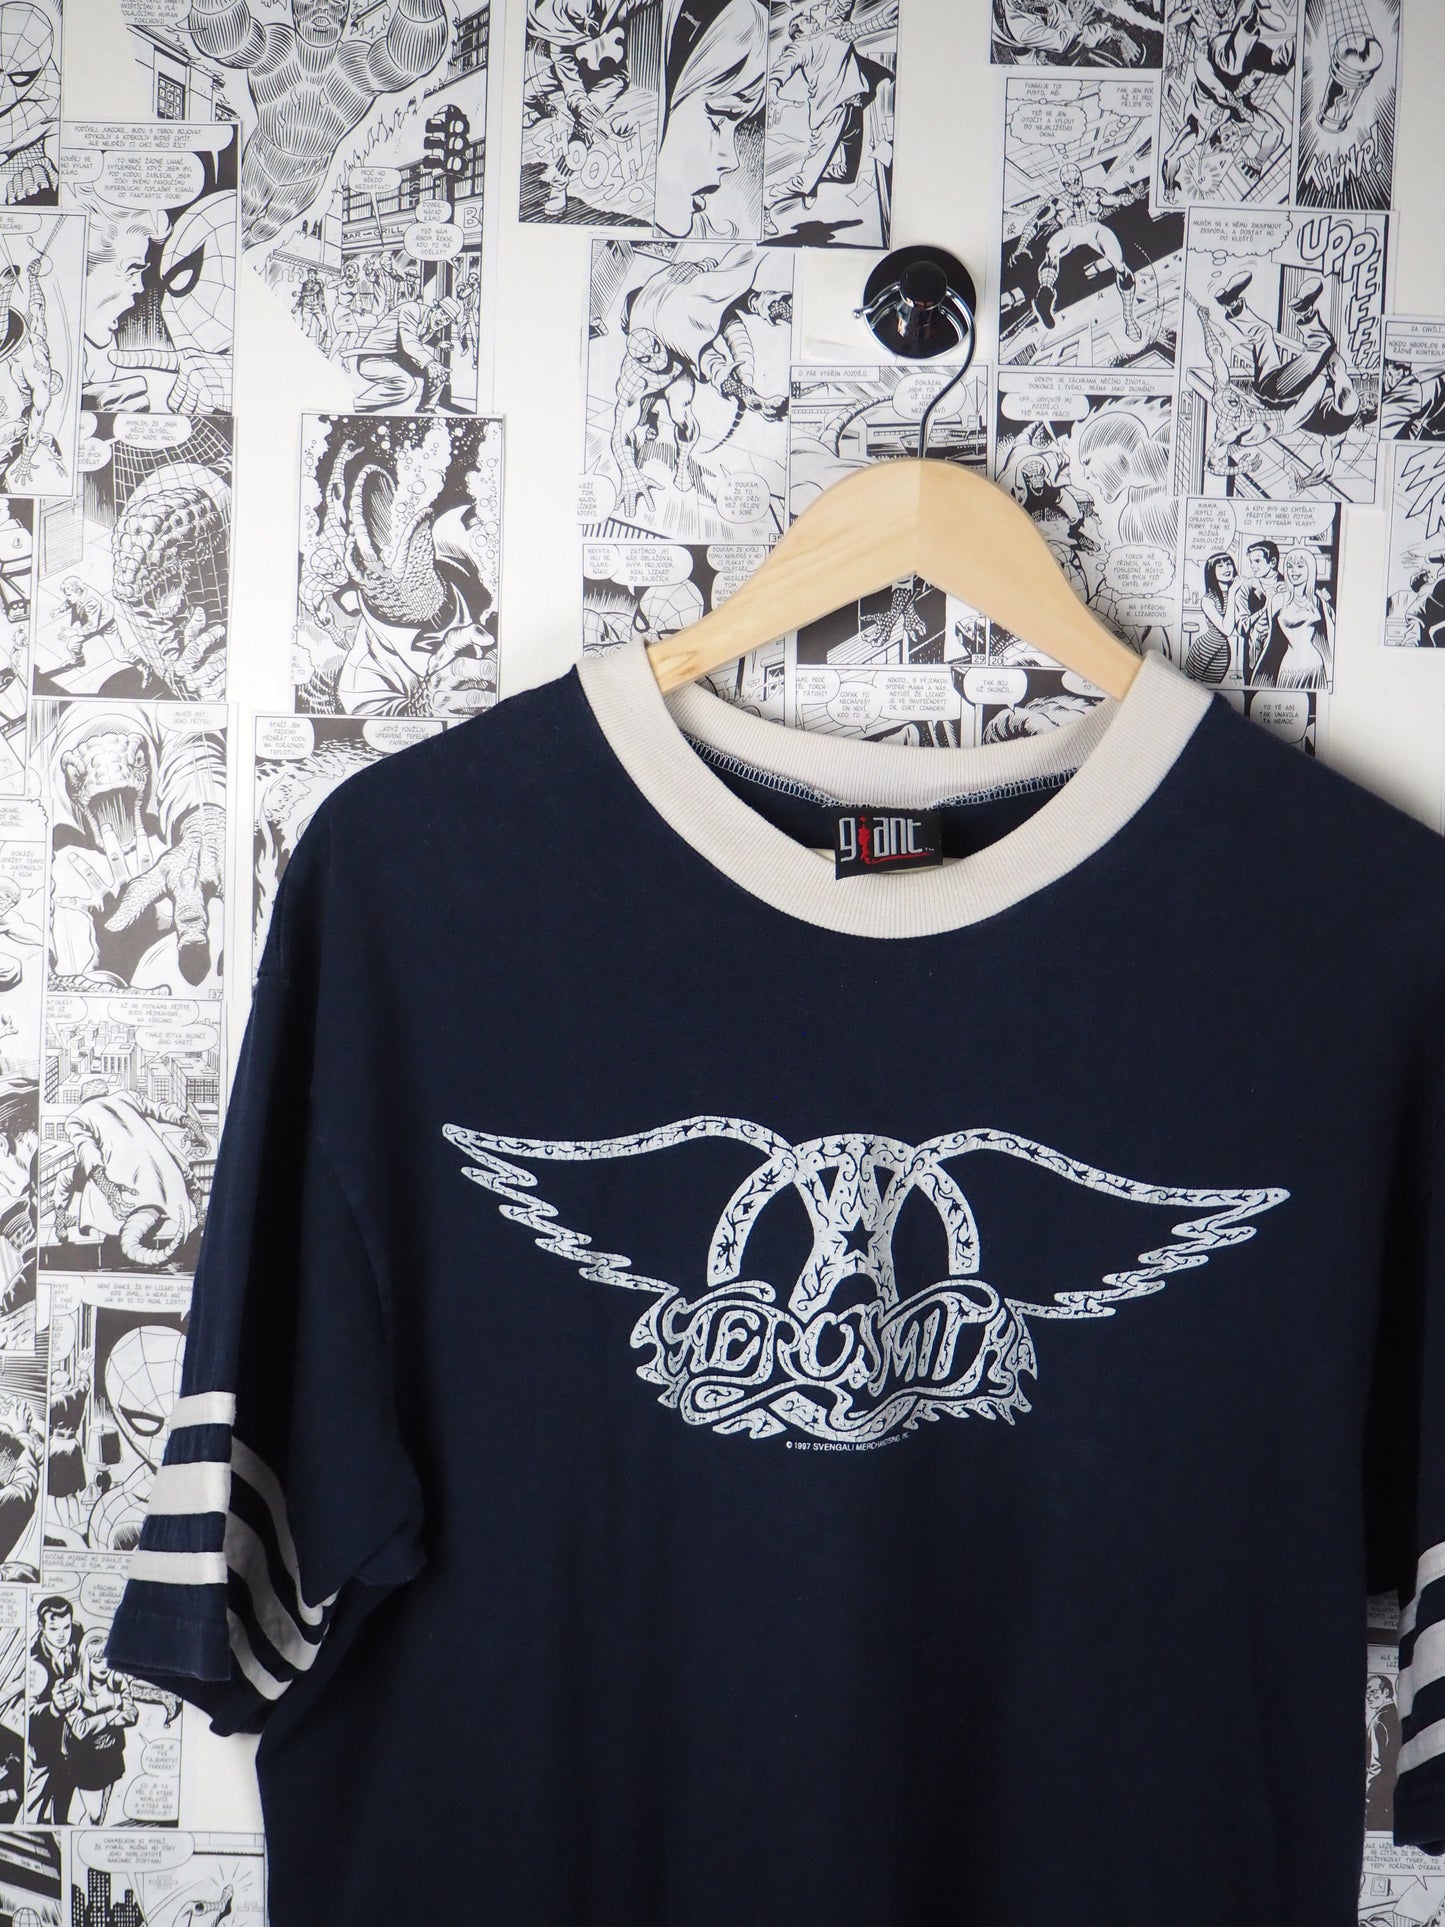 Vintage Aerosmith 1997 t-shirt - size XL